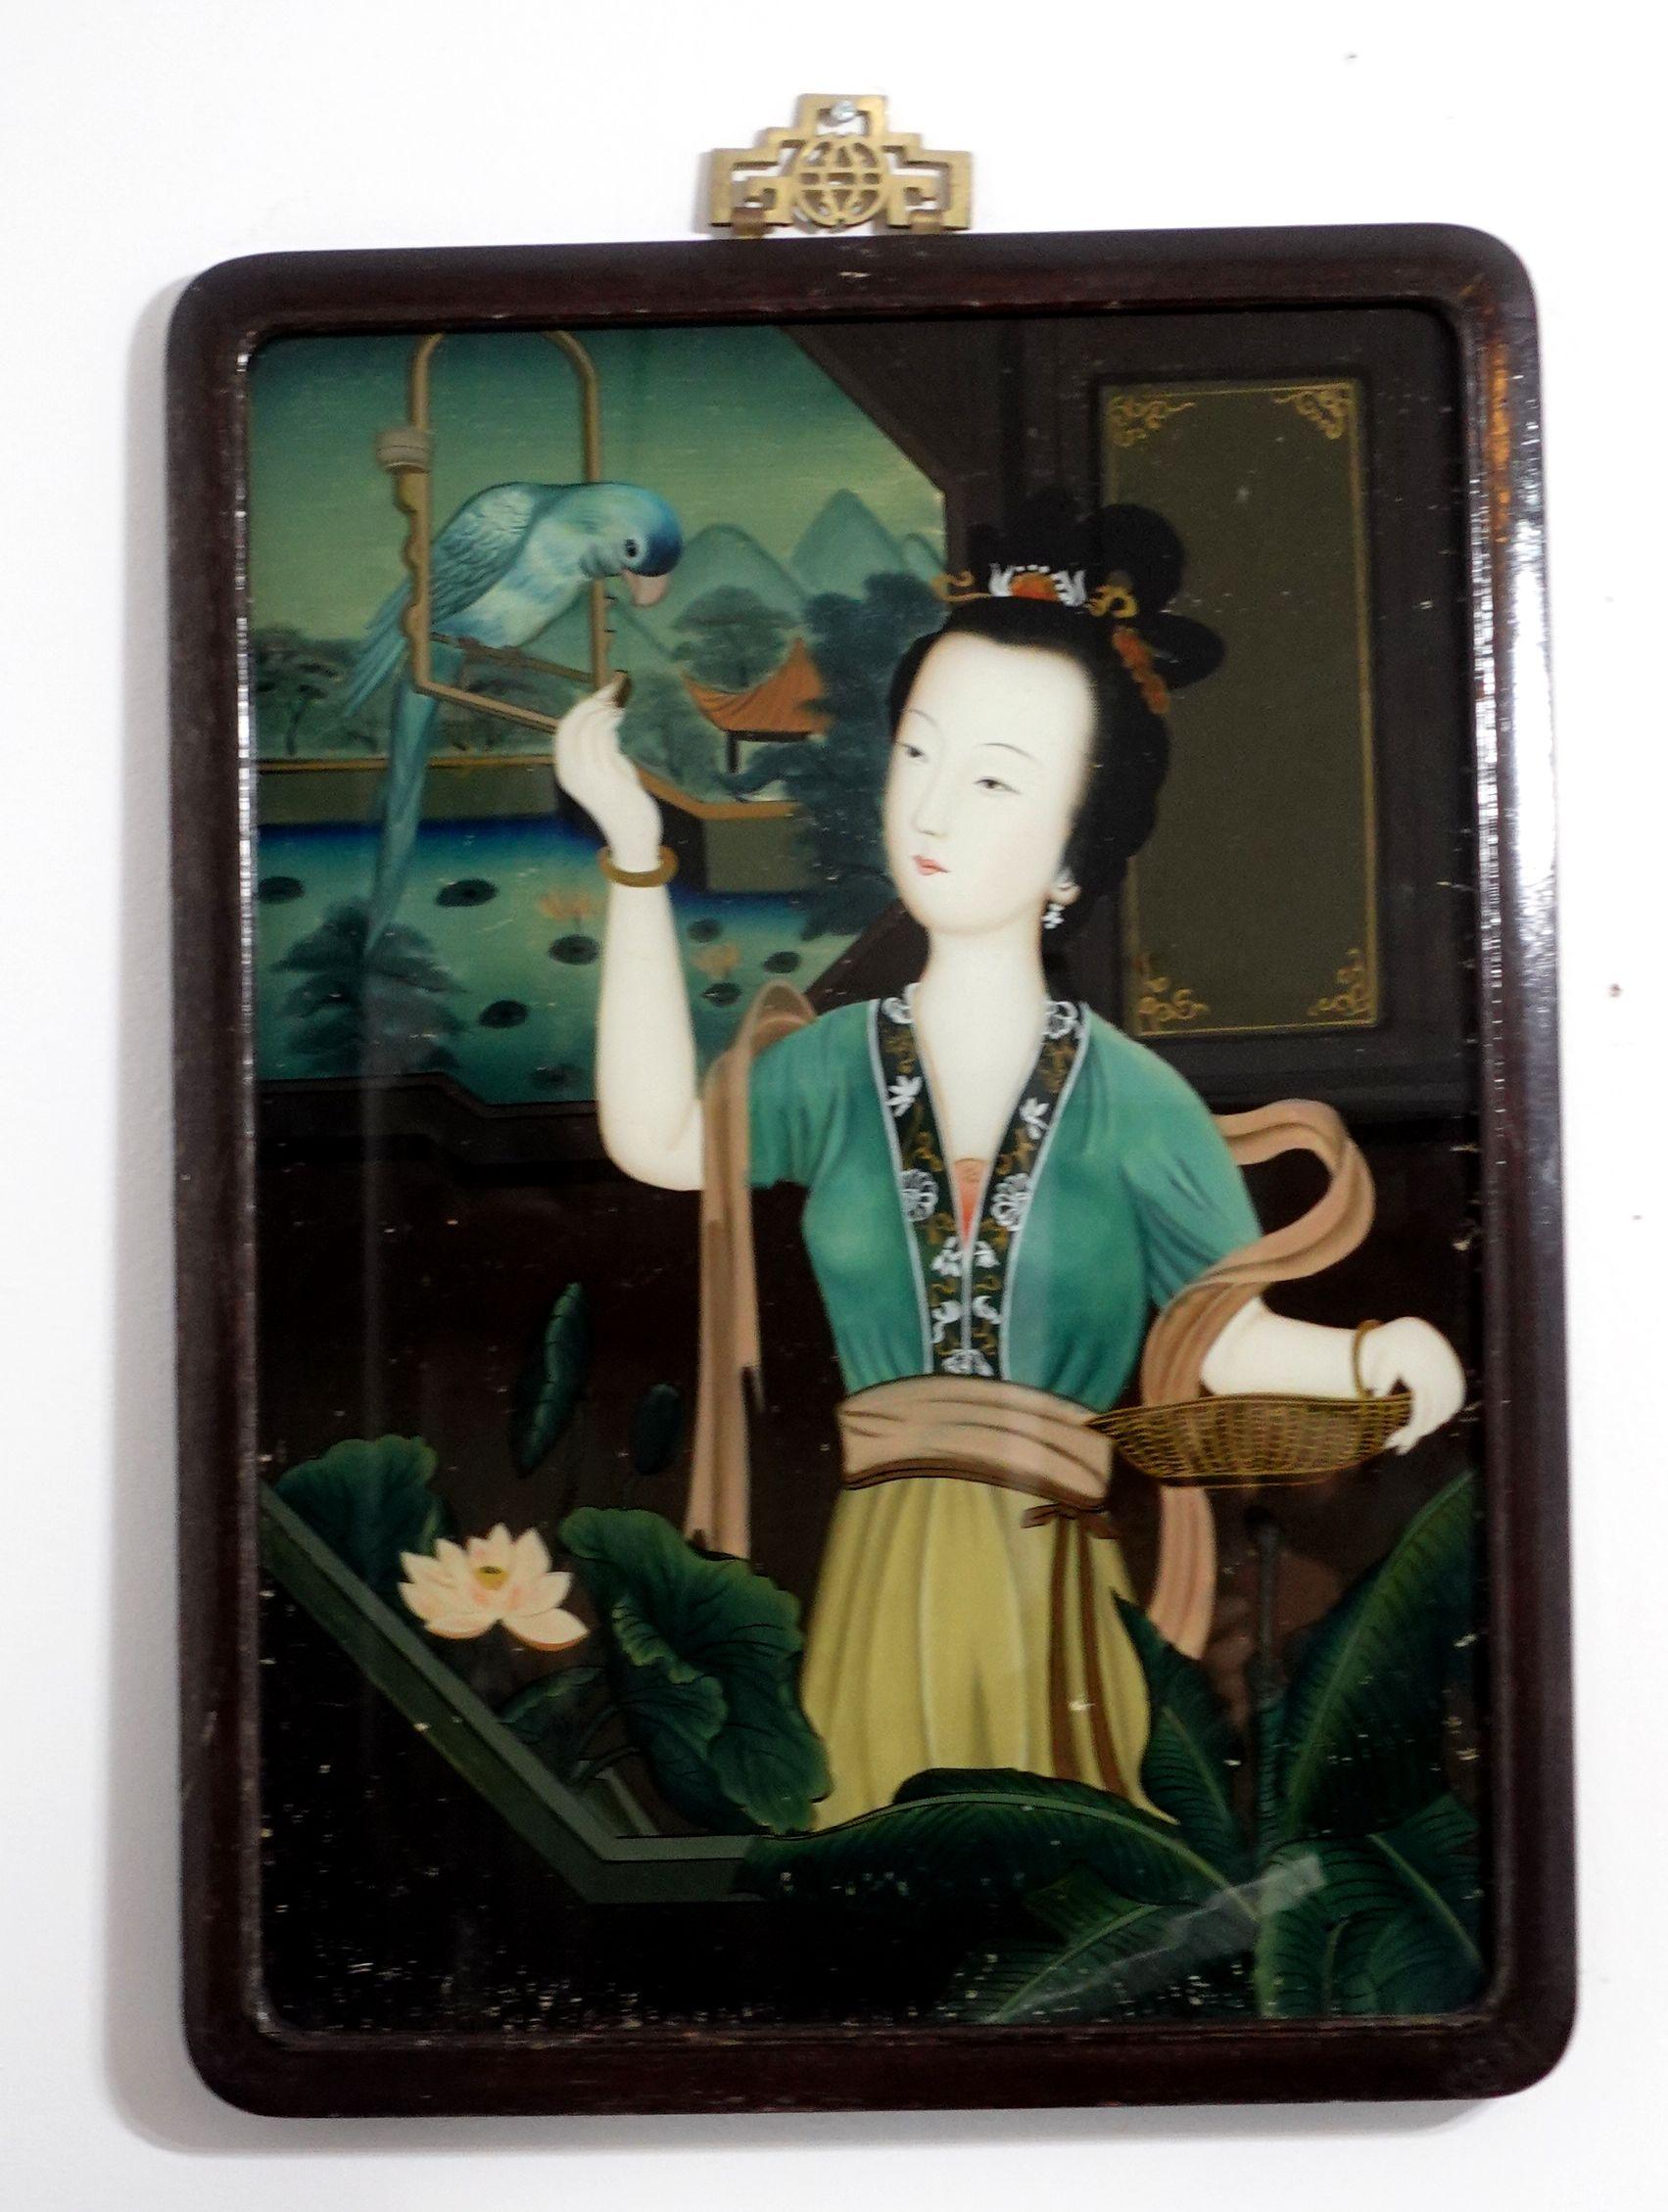 Ein charmantes chinesisches Hinterglasbild aus dem späten 19. bis frühen 20. Jahrhundert, das eine Dame im Garten darstellt, die mit einem Vogel spielt. Das Gemälde wird mit dem originalen Hartholzrahmen und den alten Stiften auf der Rückseite der